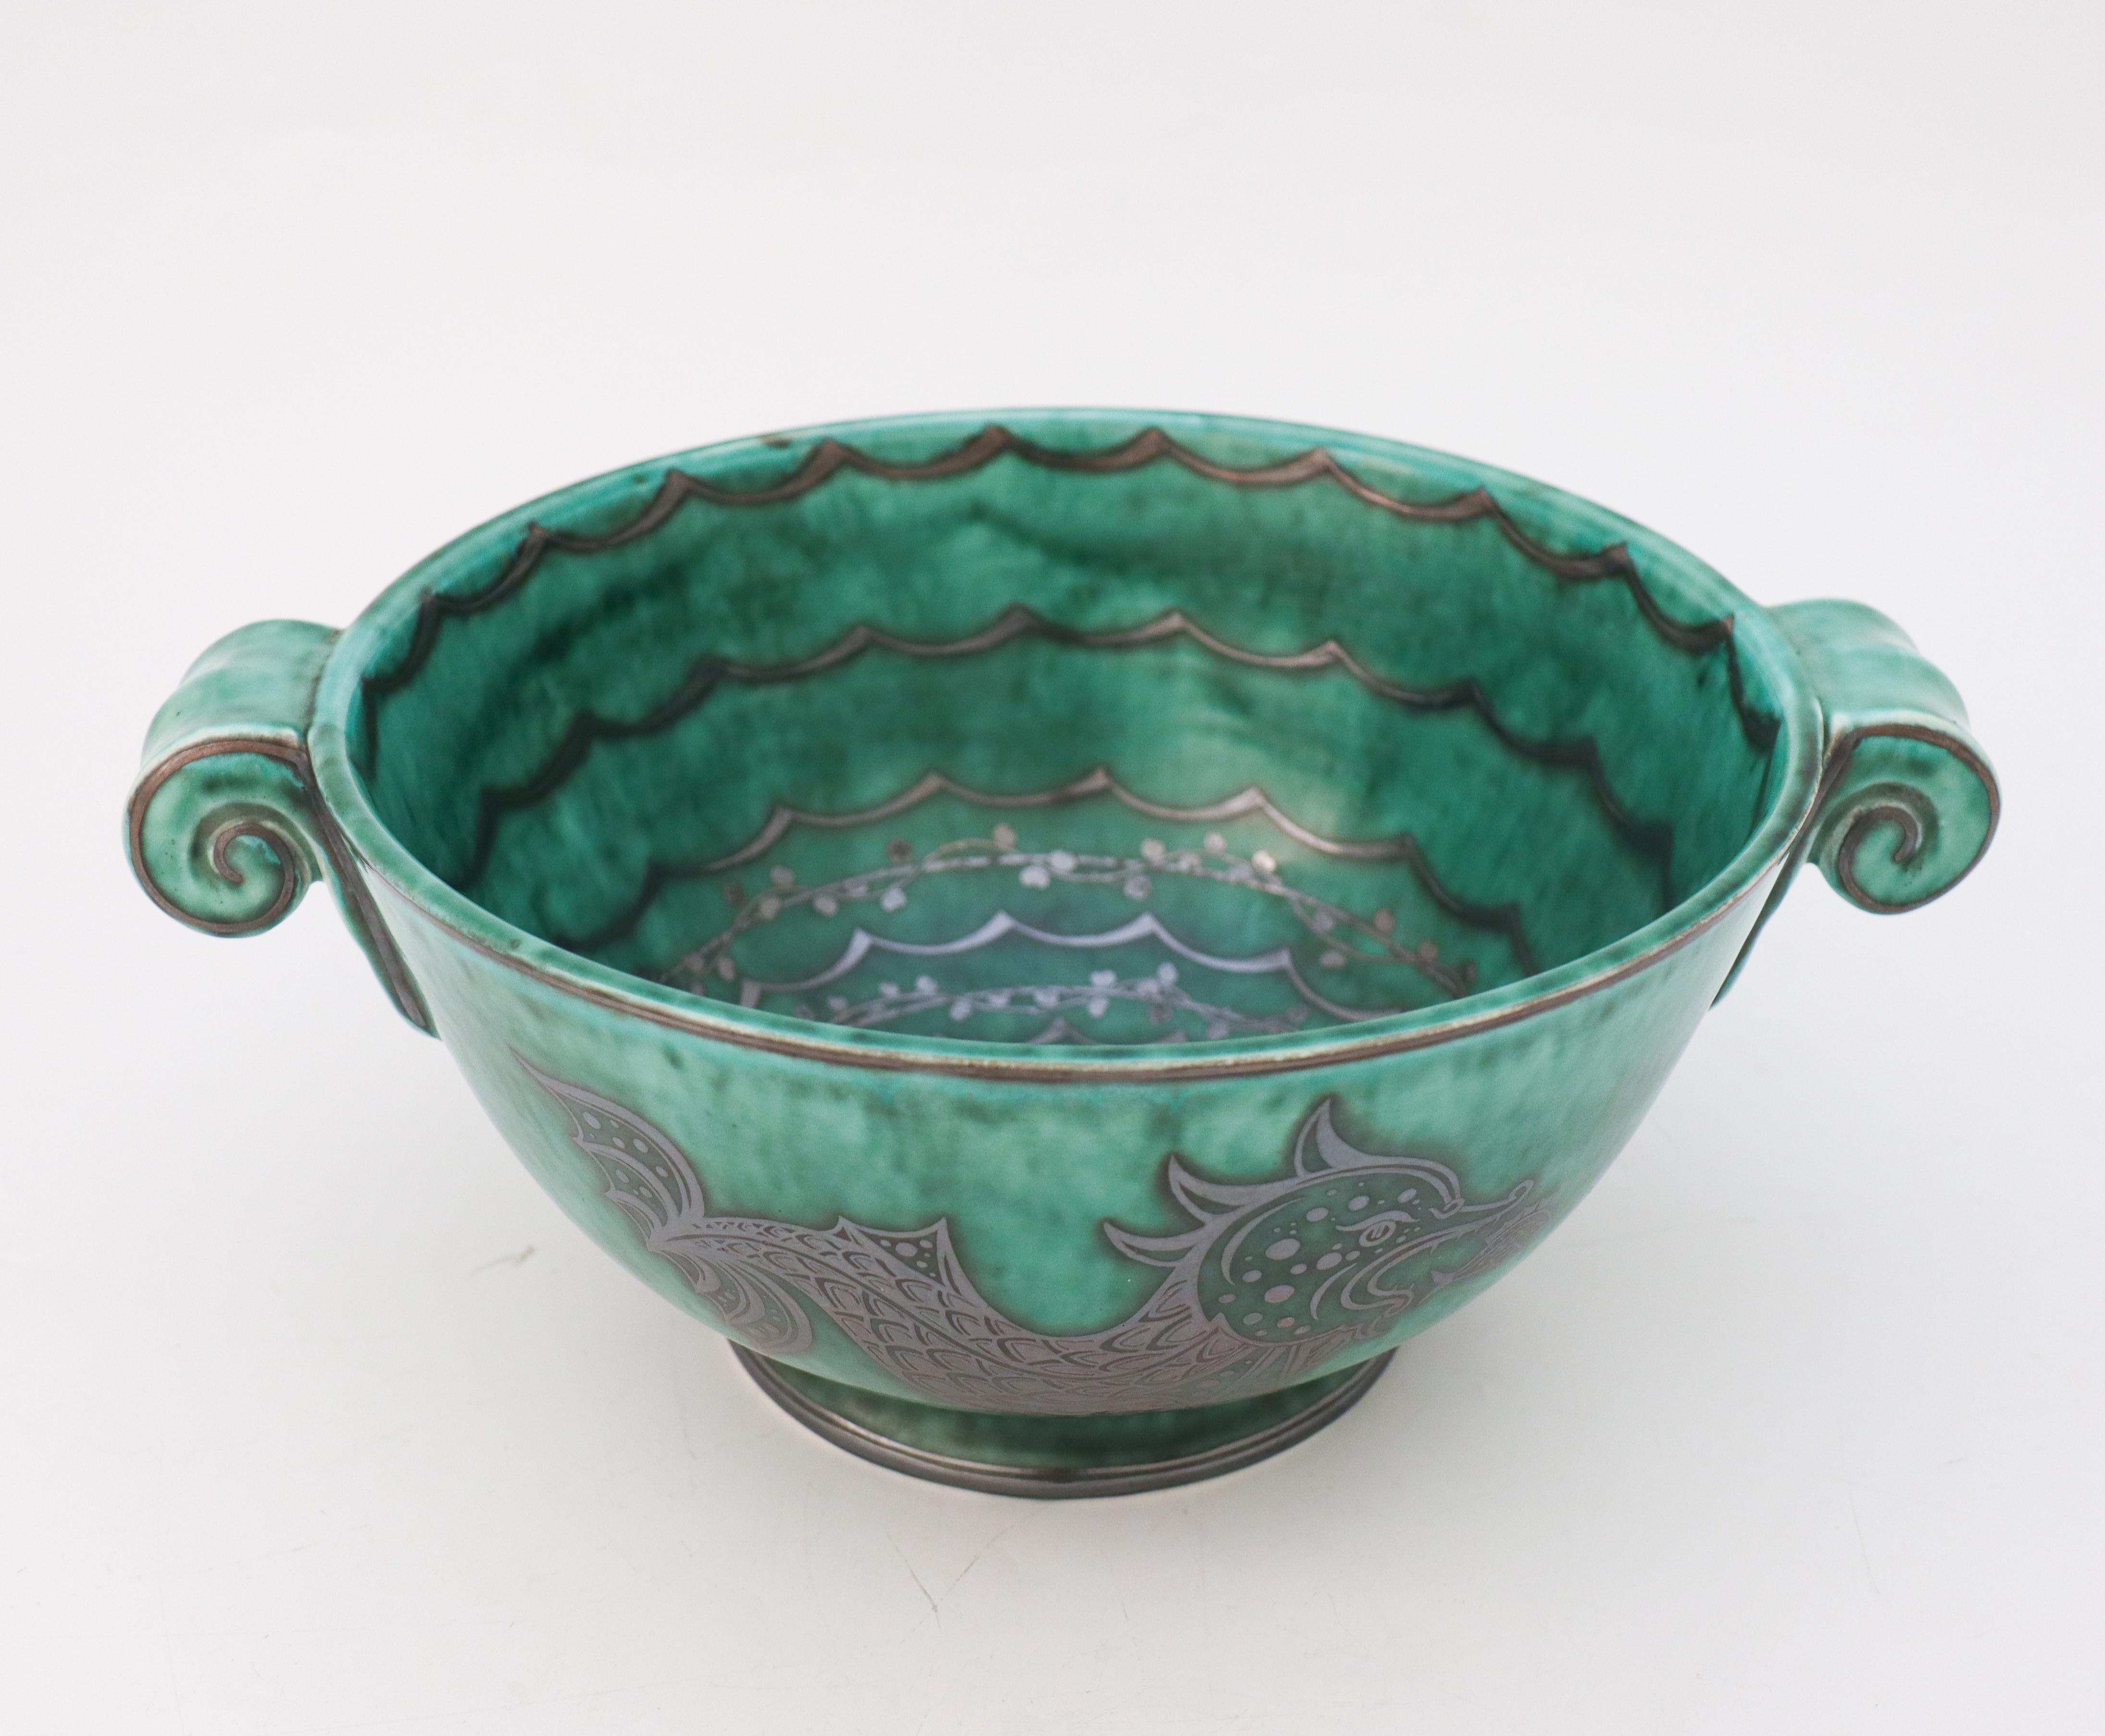 Glazed Green Large Bowl Argenta #901, Wilhelm Kåge Fish, Scandinavian Modern, Dragon For Sale